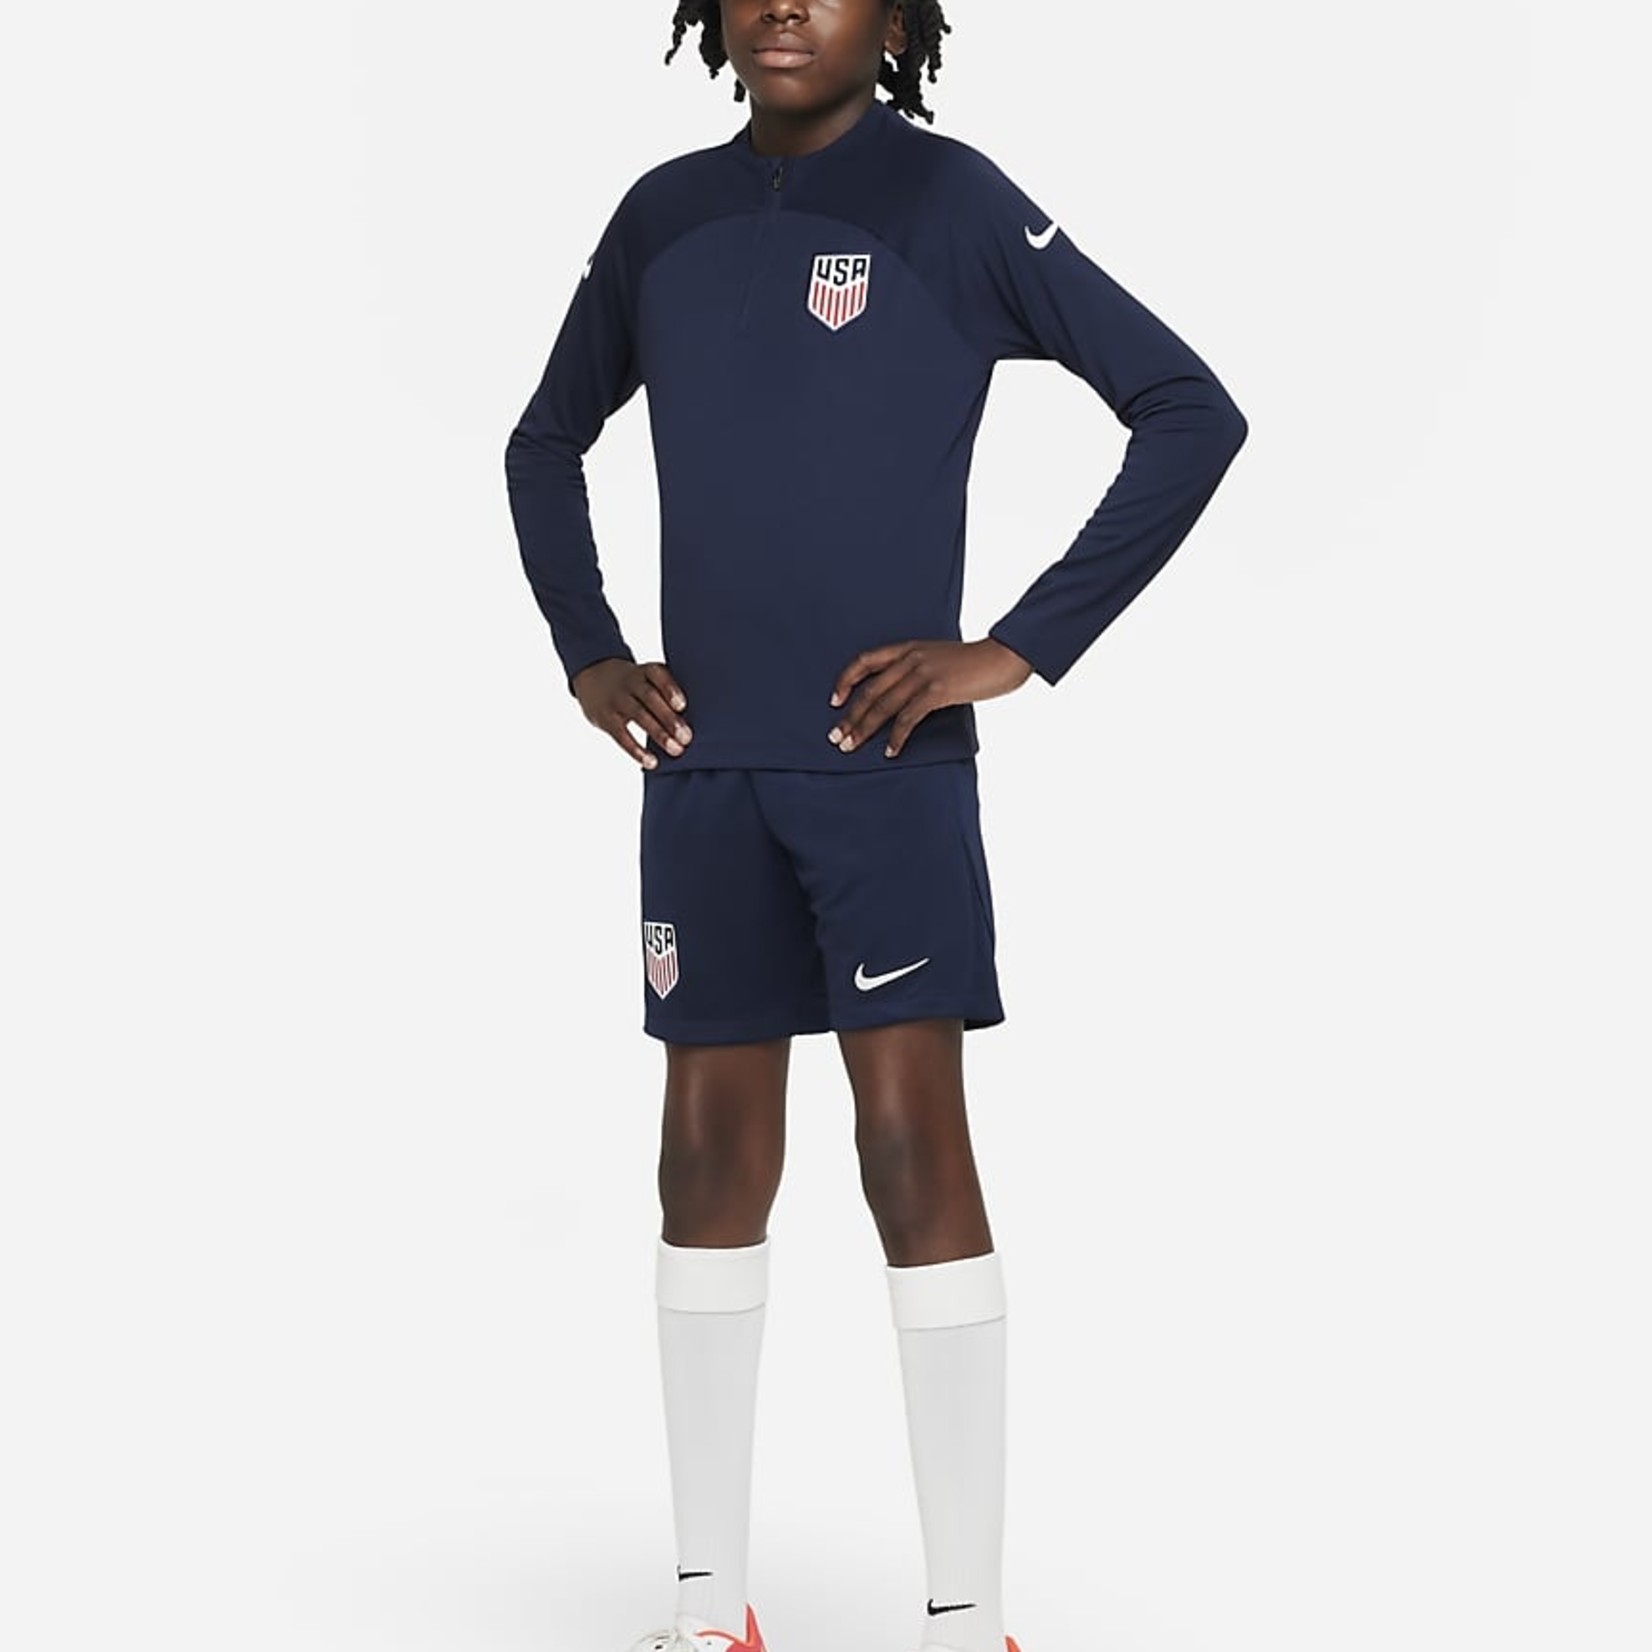 Youth Nike U.S. Academy Pro Shorts